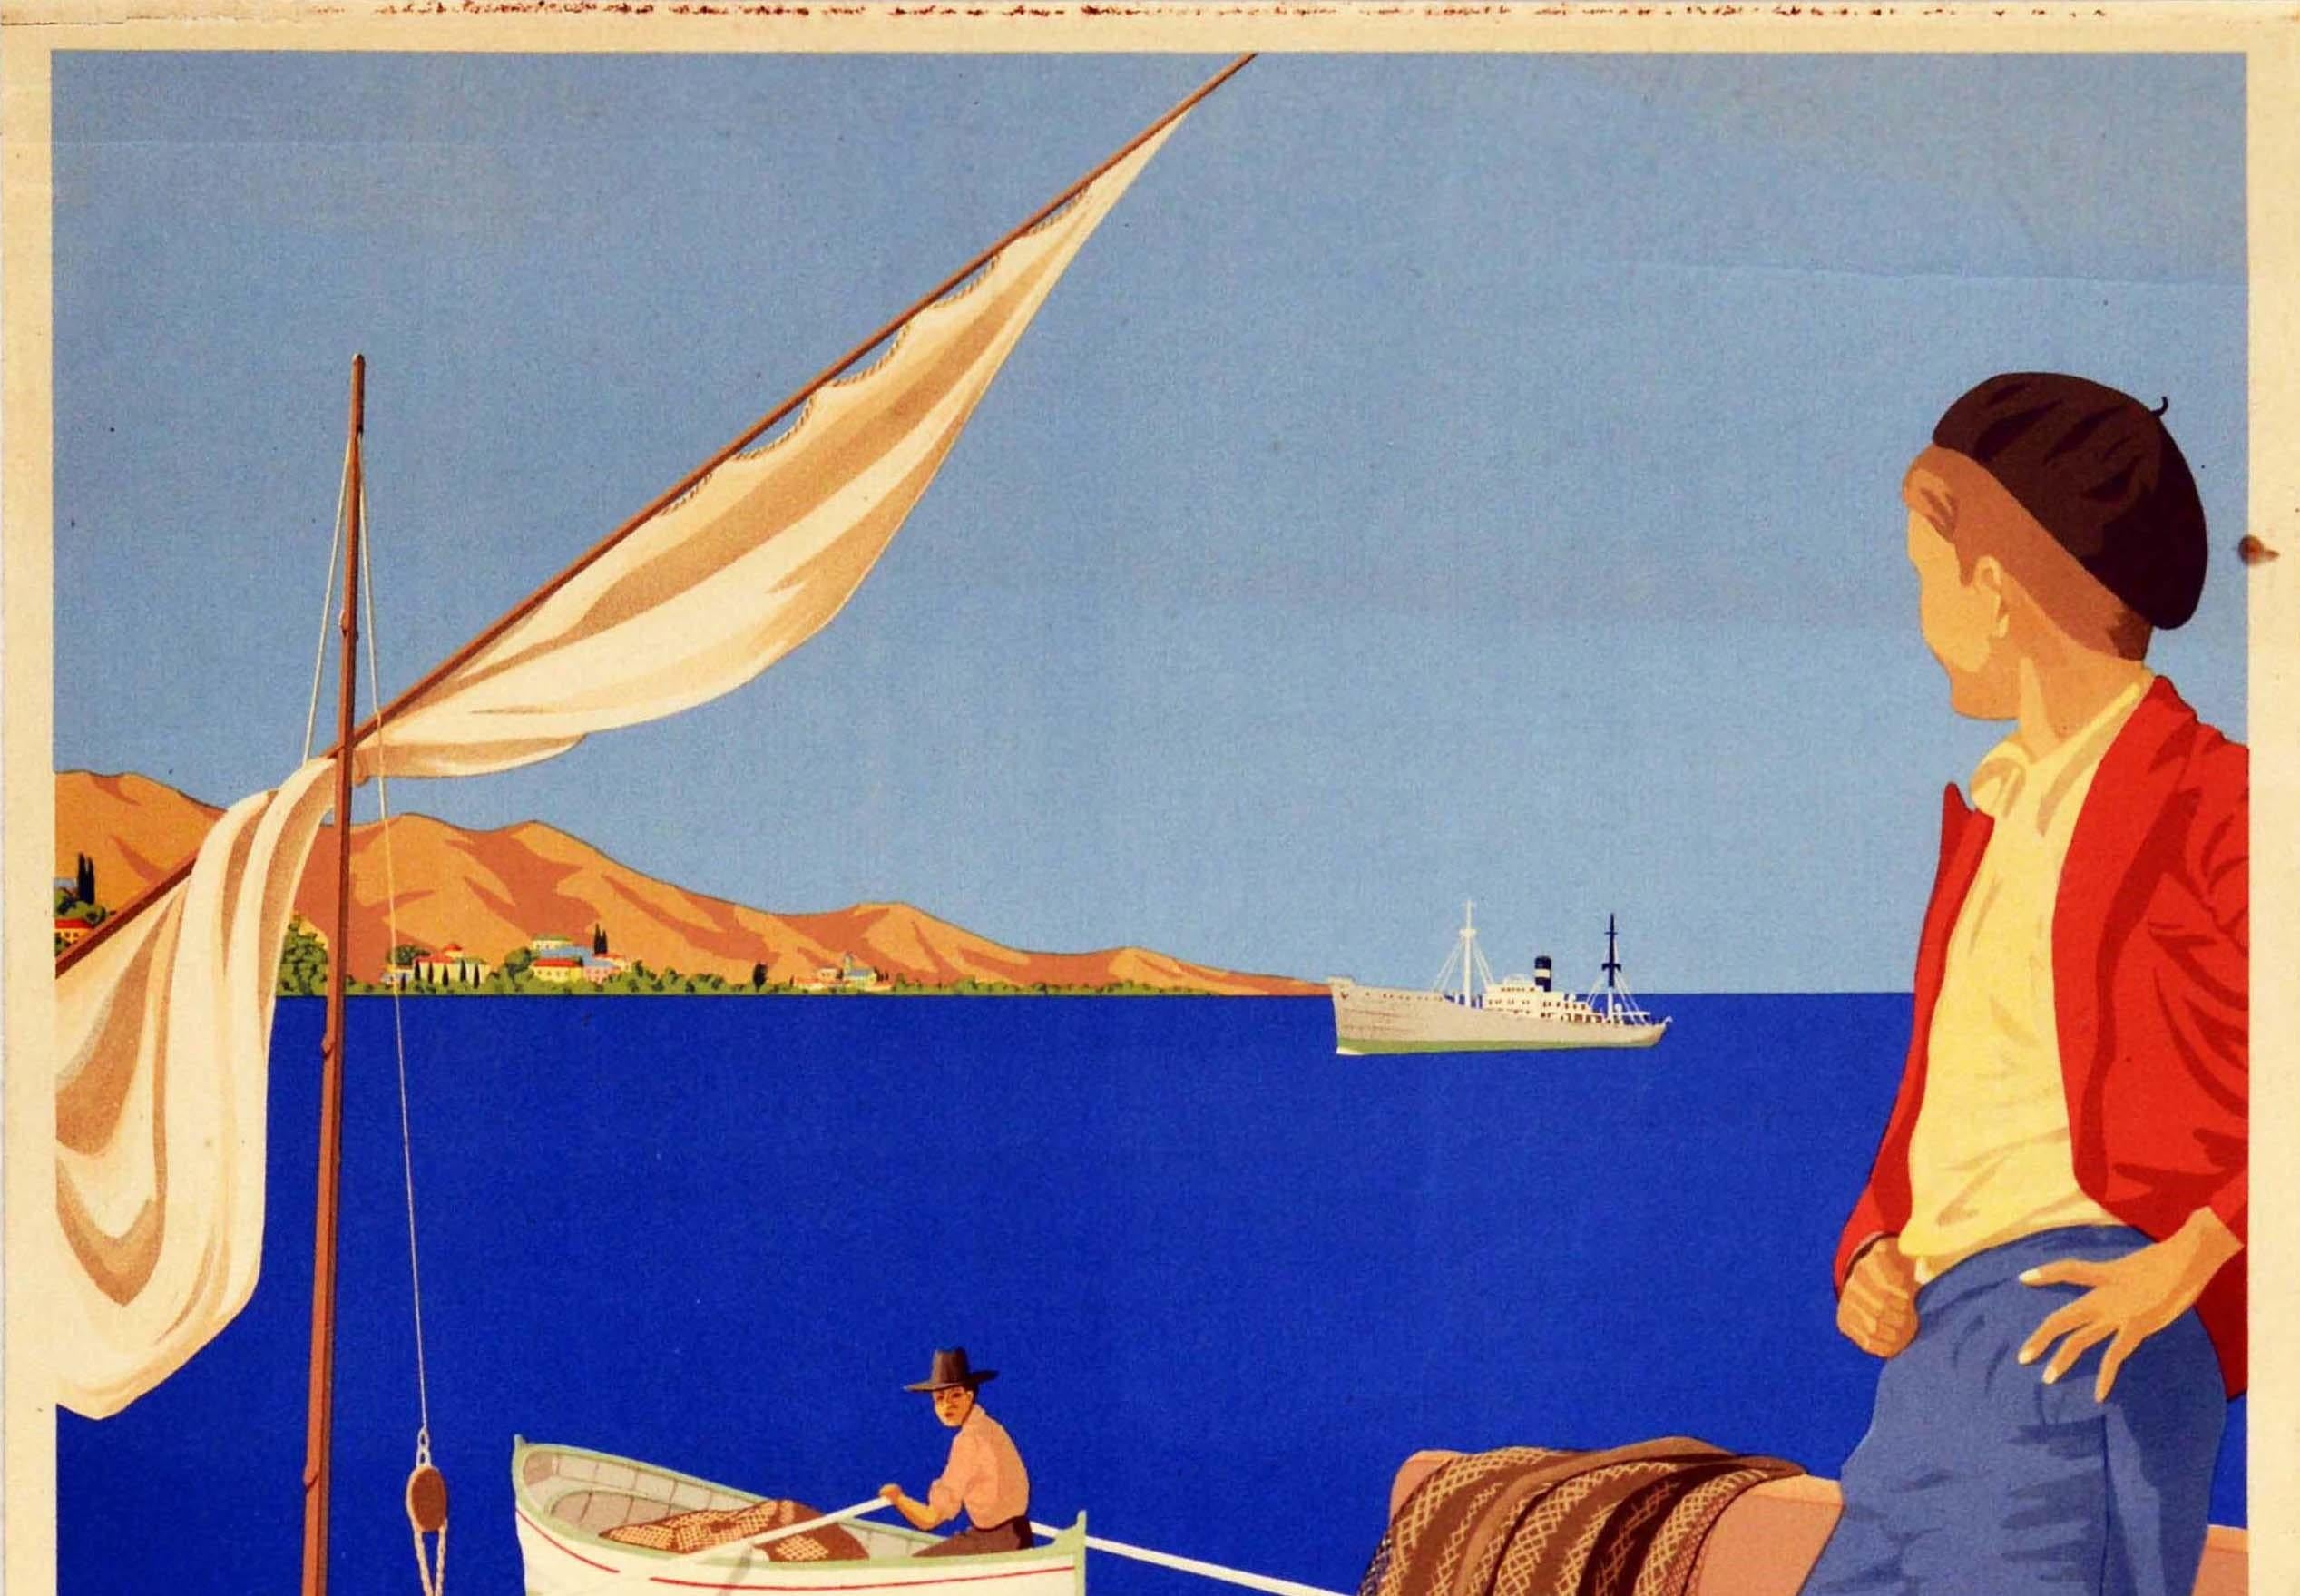 Original vintage cruise travel poster - Reist in den sonnigen Suden mit der Sloman Linie Hamburg / Travel to the sunny South with the Sloman Line Hamburg - mit einem großartigen Bild, das einen Jungen zeigt, der auf einem Dock neben einem